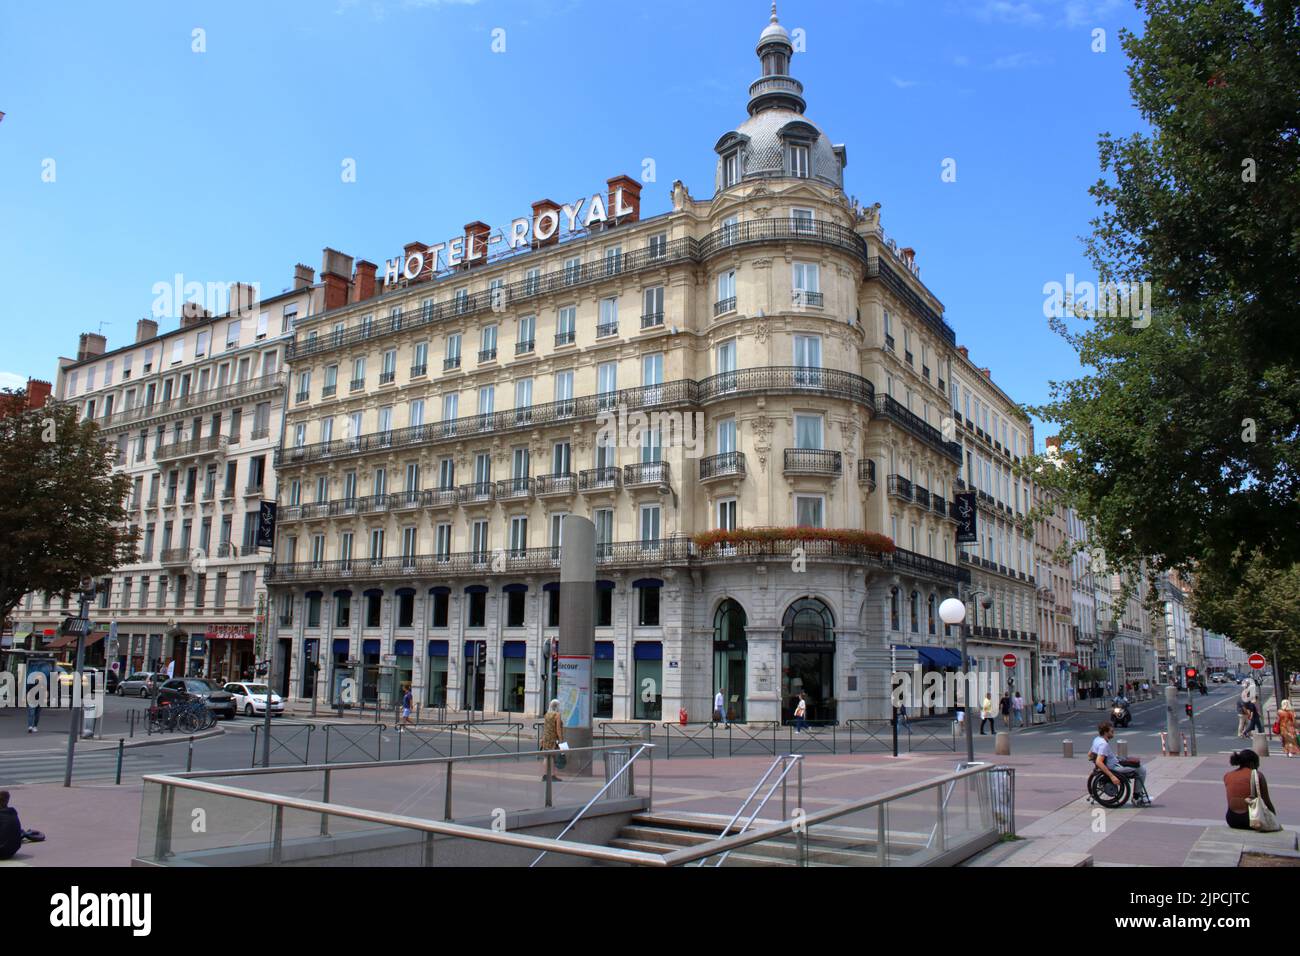 Vue sur le superbe Hôtel Royal surplombant la place Bellecour à Lyon, conçu par l'architecte Prosper Perrin et ouvert en 1912. Banque D'Images